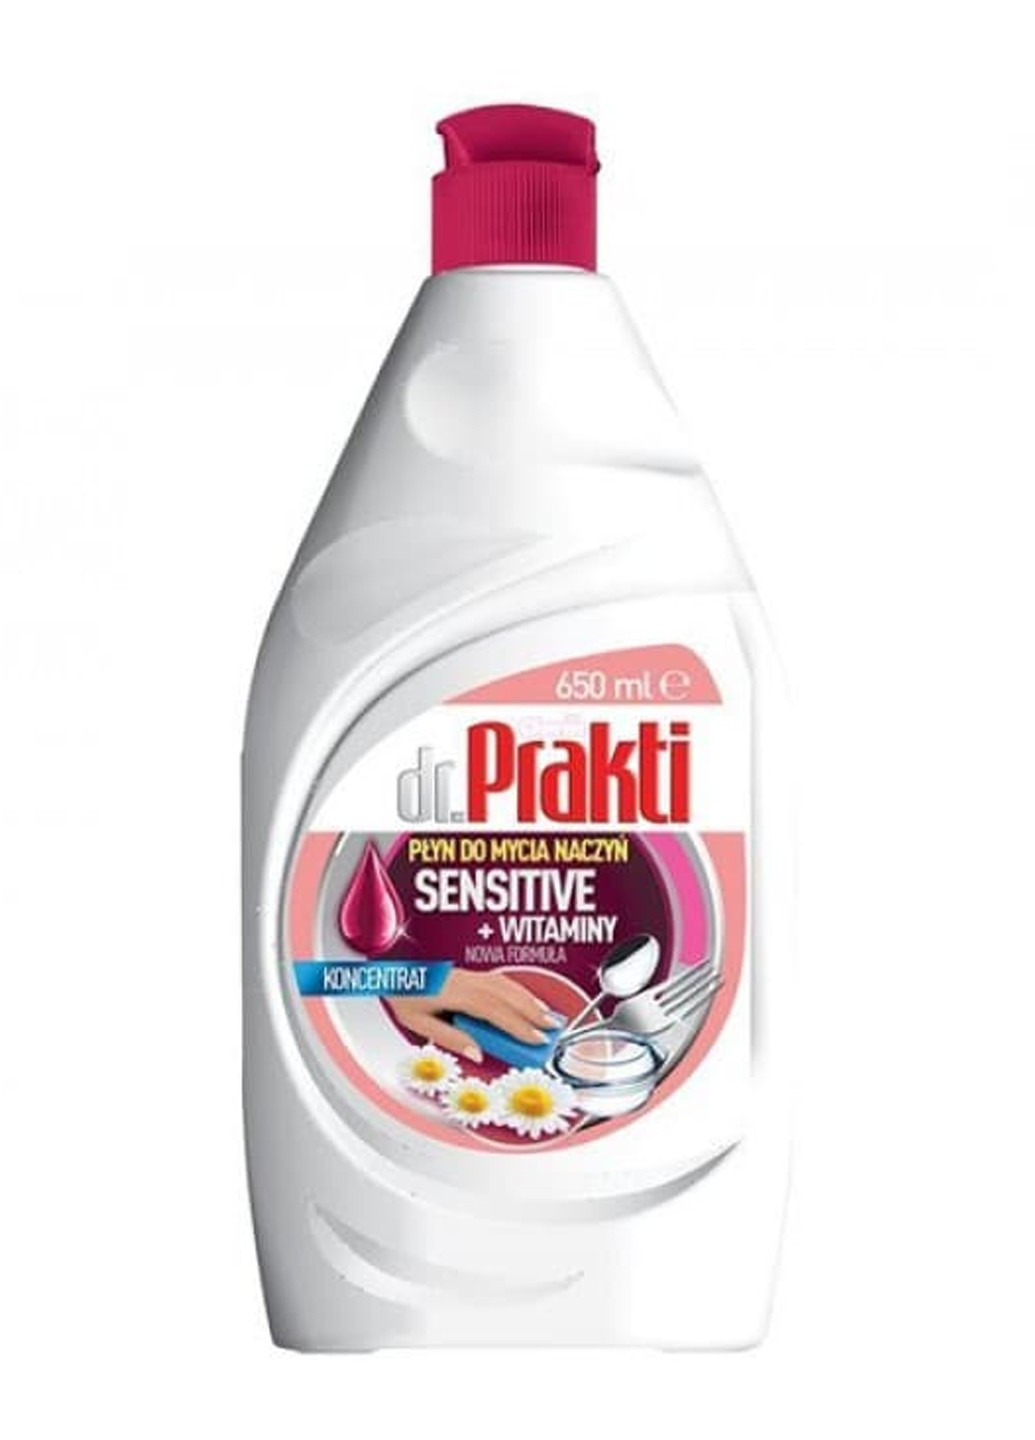 Жидкость для мытья посуды Sensetive+ Vitaminy 650 мл Dr. Prakti (264668819)